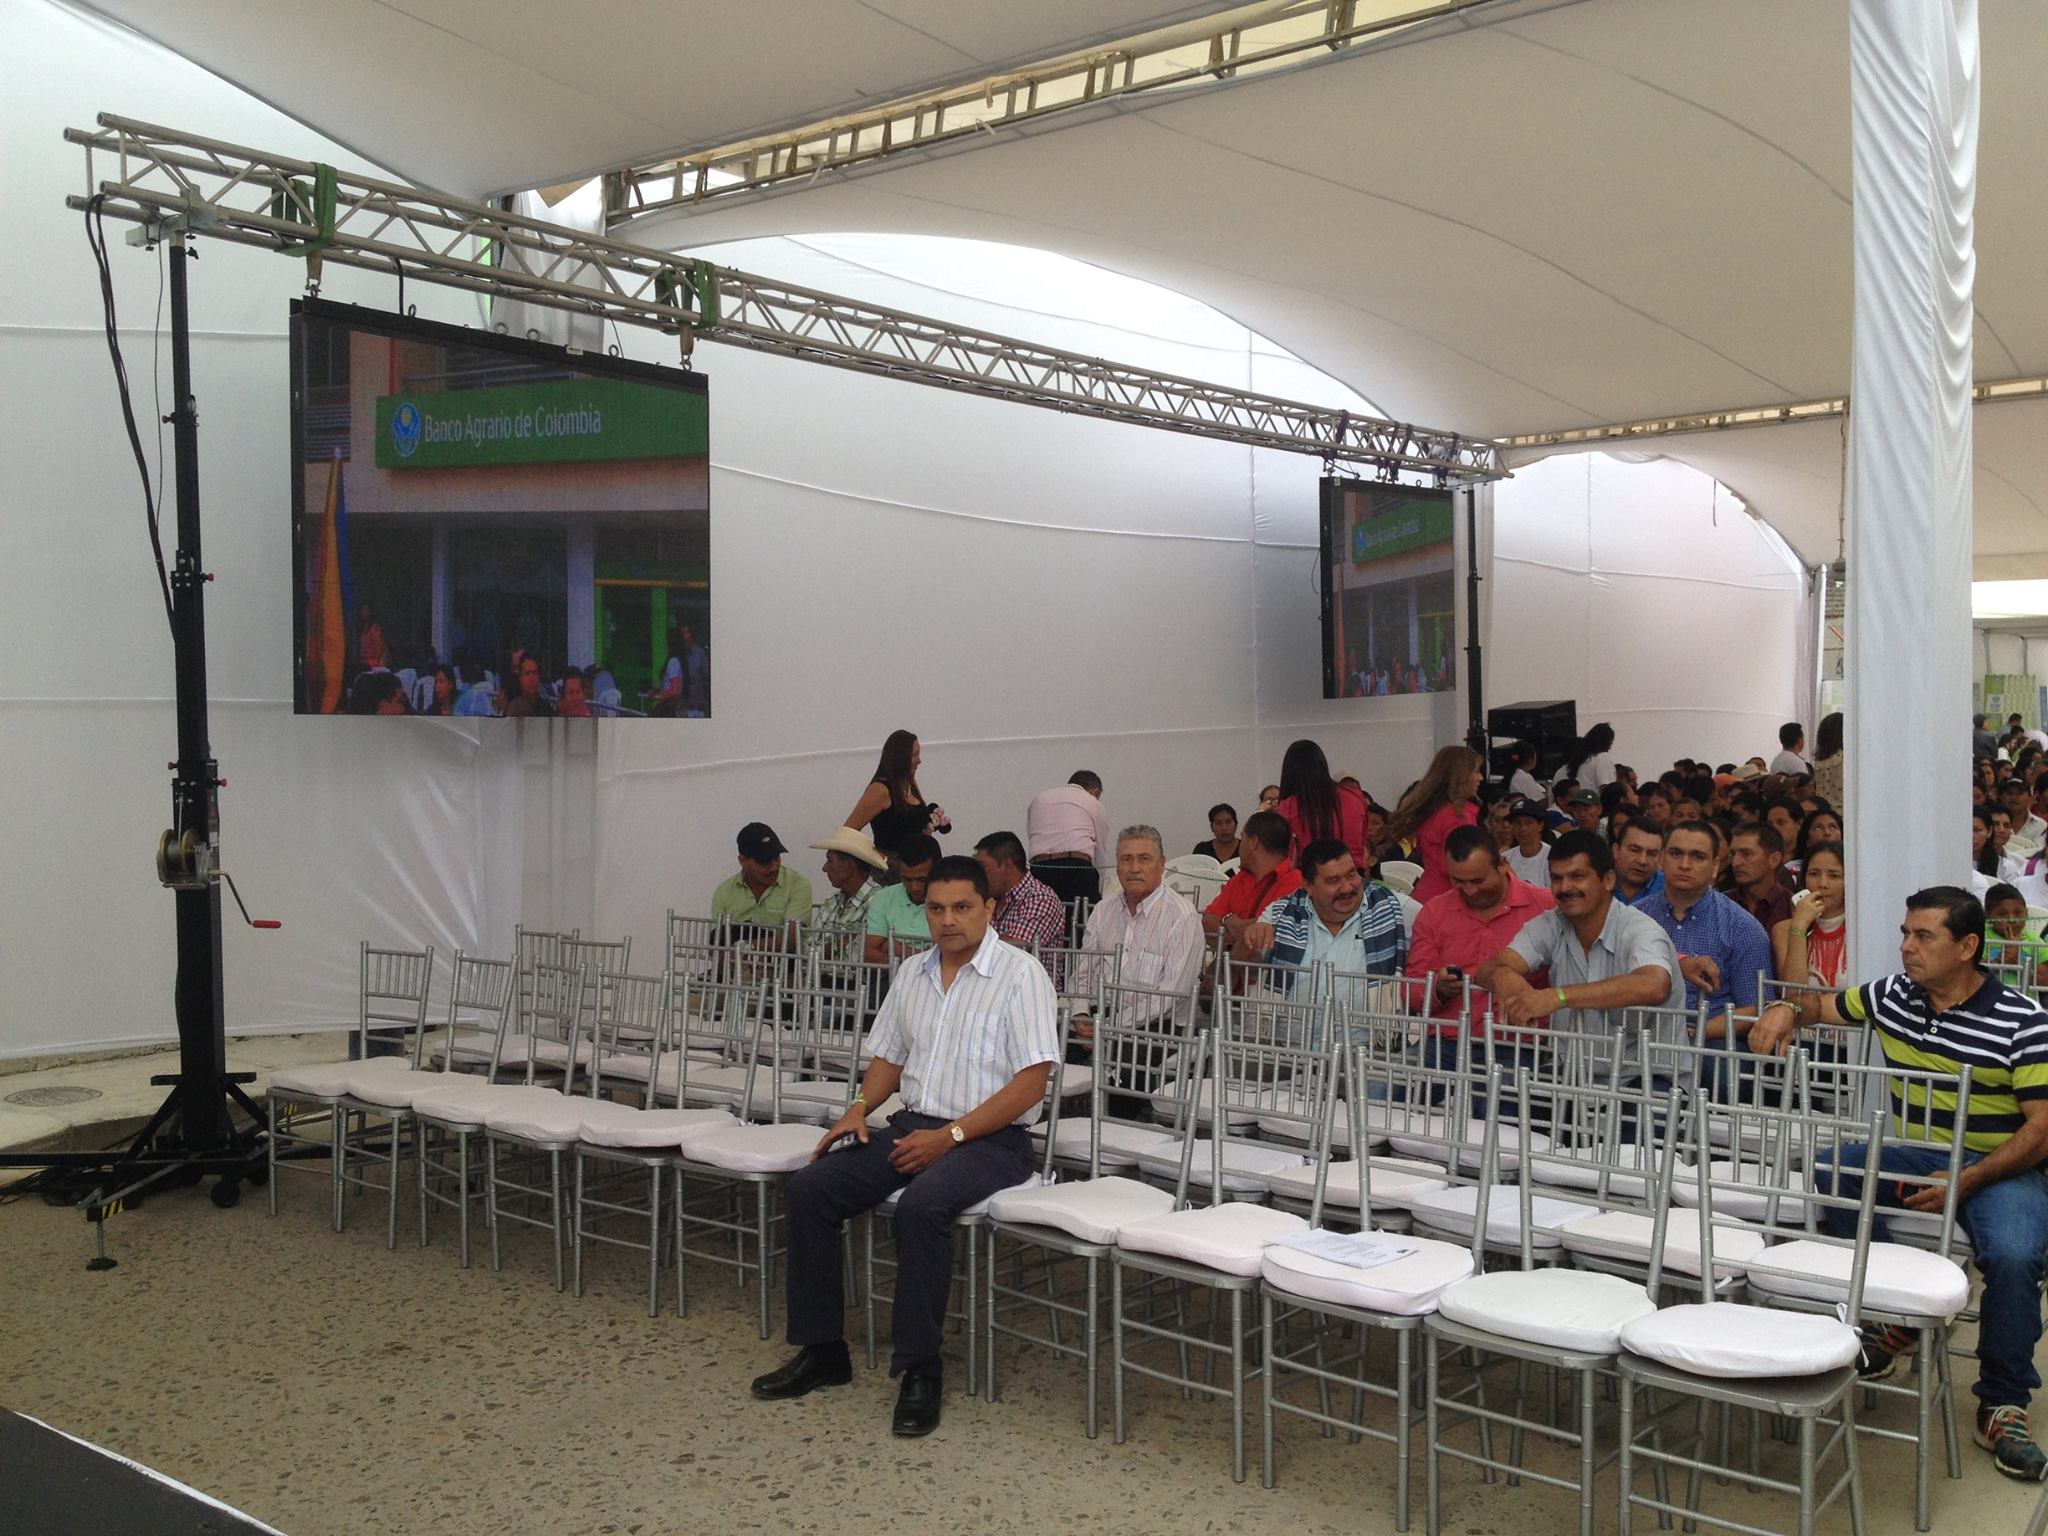 Inauguración Banco Agrario de Colombia @ Pitalito-Huila (Colombia)